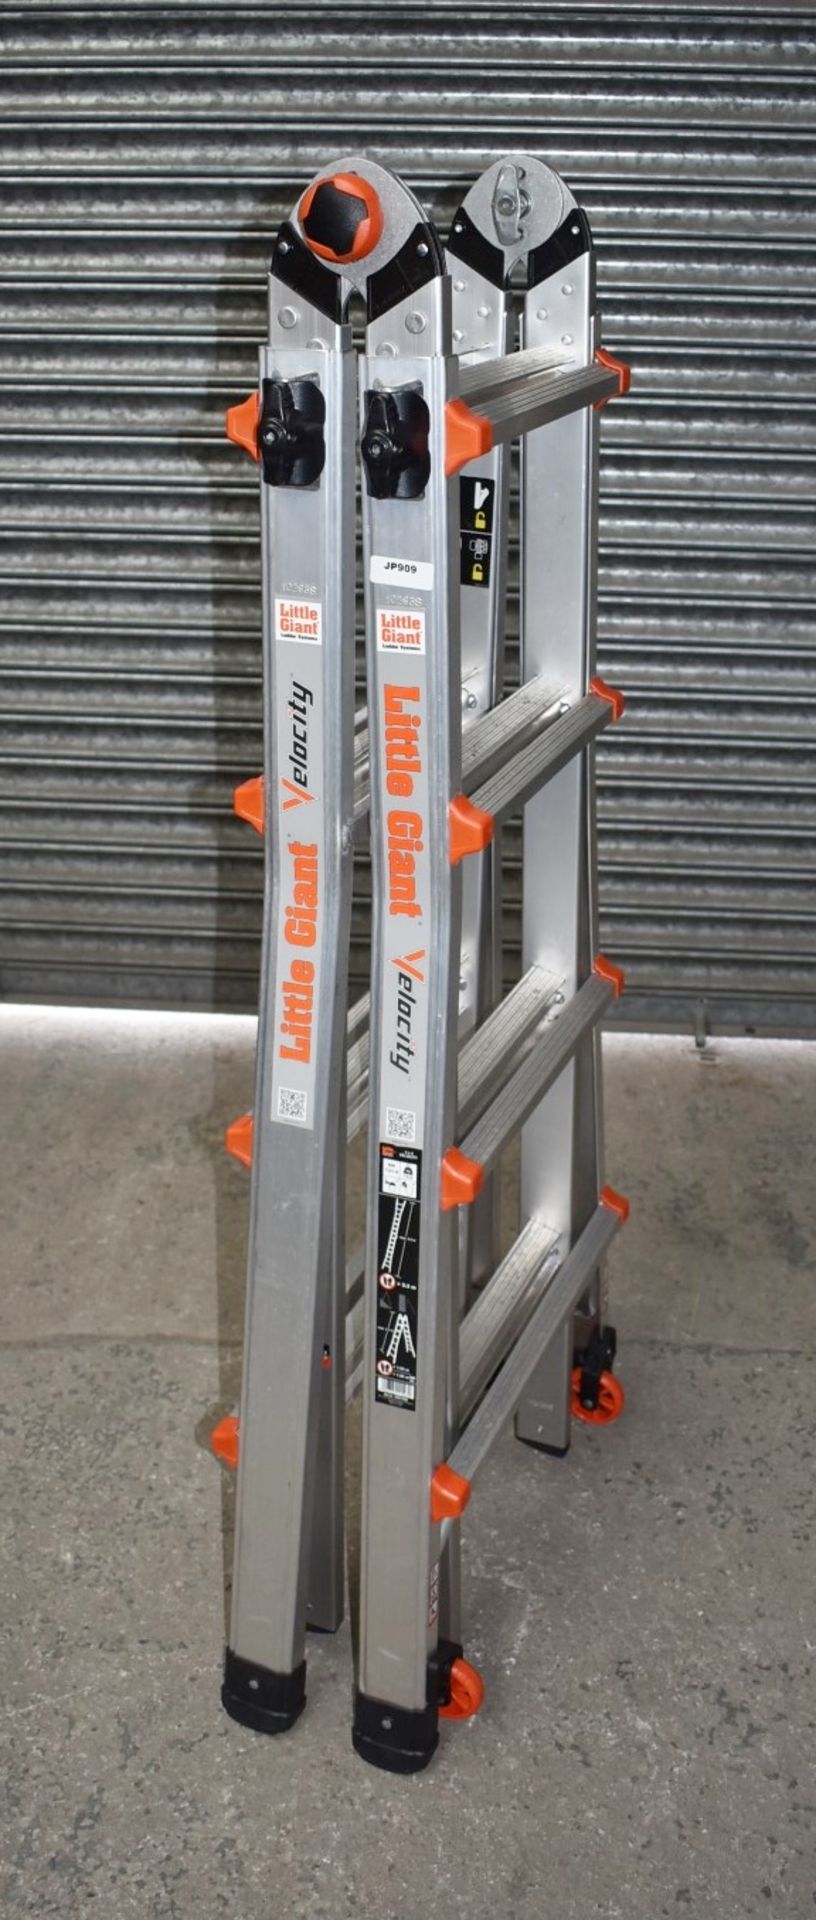 1 x Little Giant 4 Step Multipurpose Velocity Ladder - Type 15417EN - Ref: JP909 GITW - CL732 - - Image 6 of 15